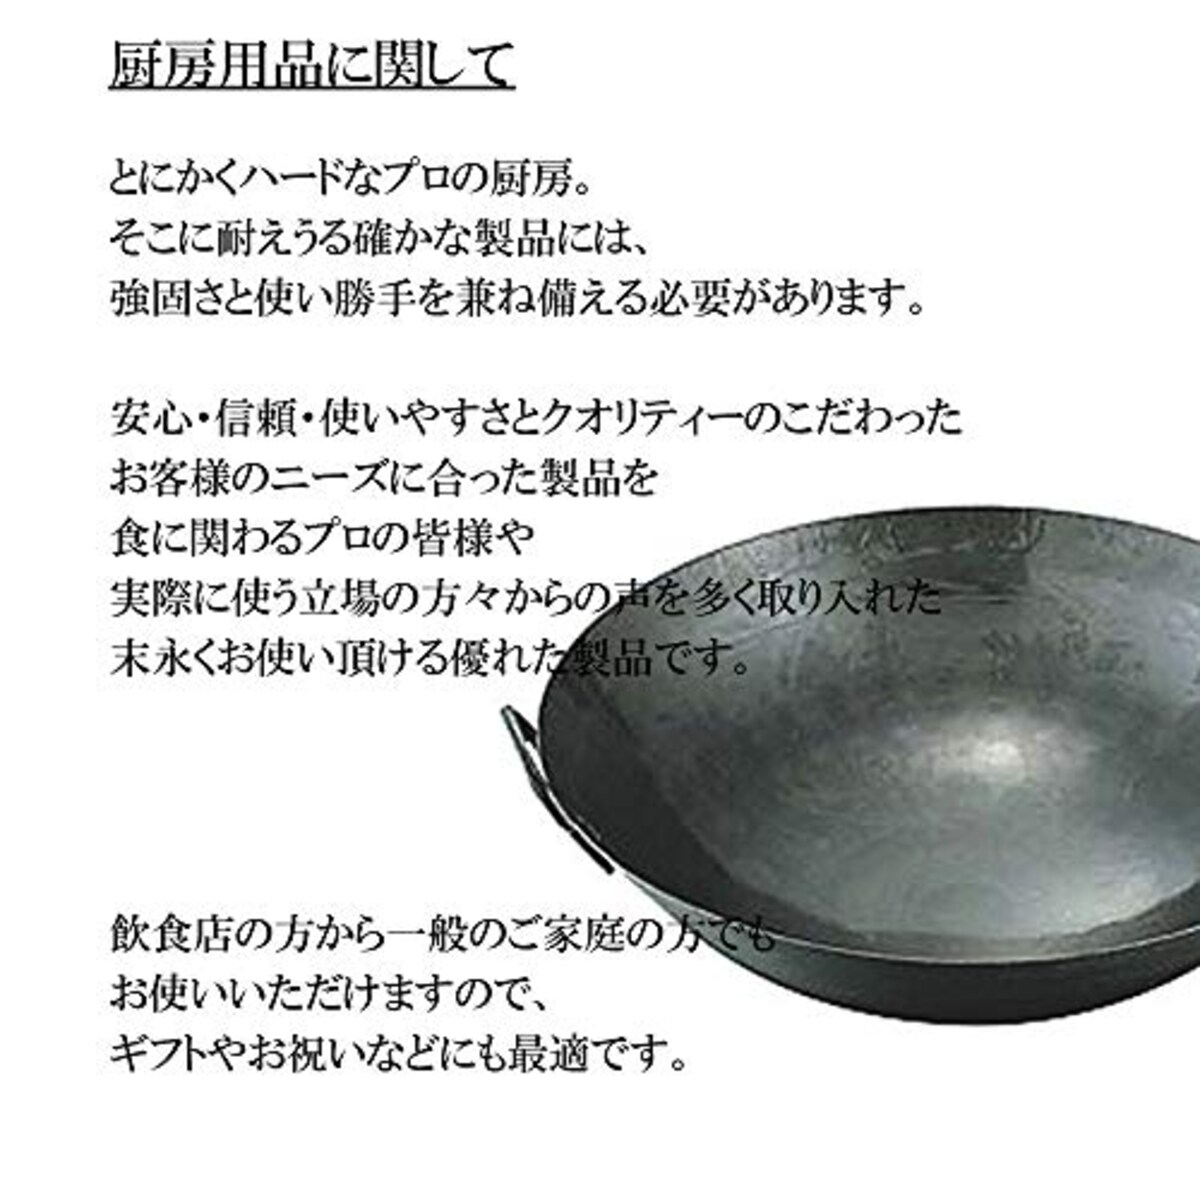  マイスタープレミアムフライパン 28cm [ 28cm 750g ] [ フライパン ] | 厨房 キッチン 台所 調理 業務用画像2 